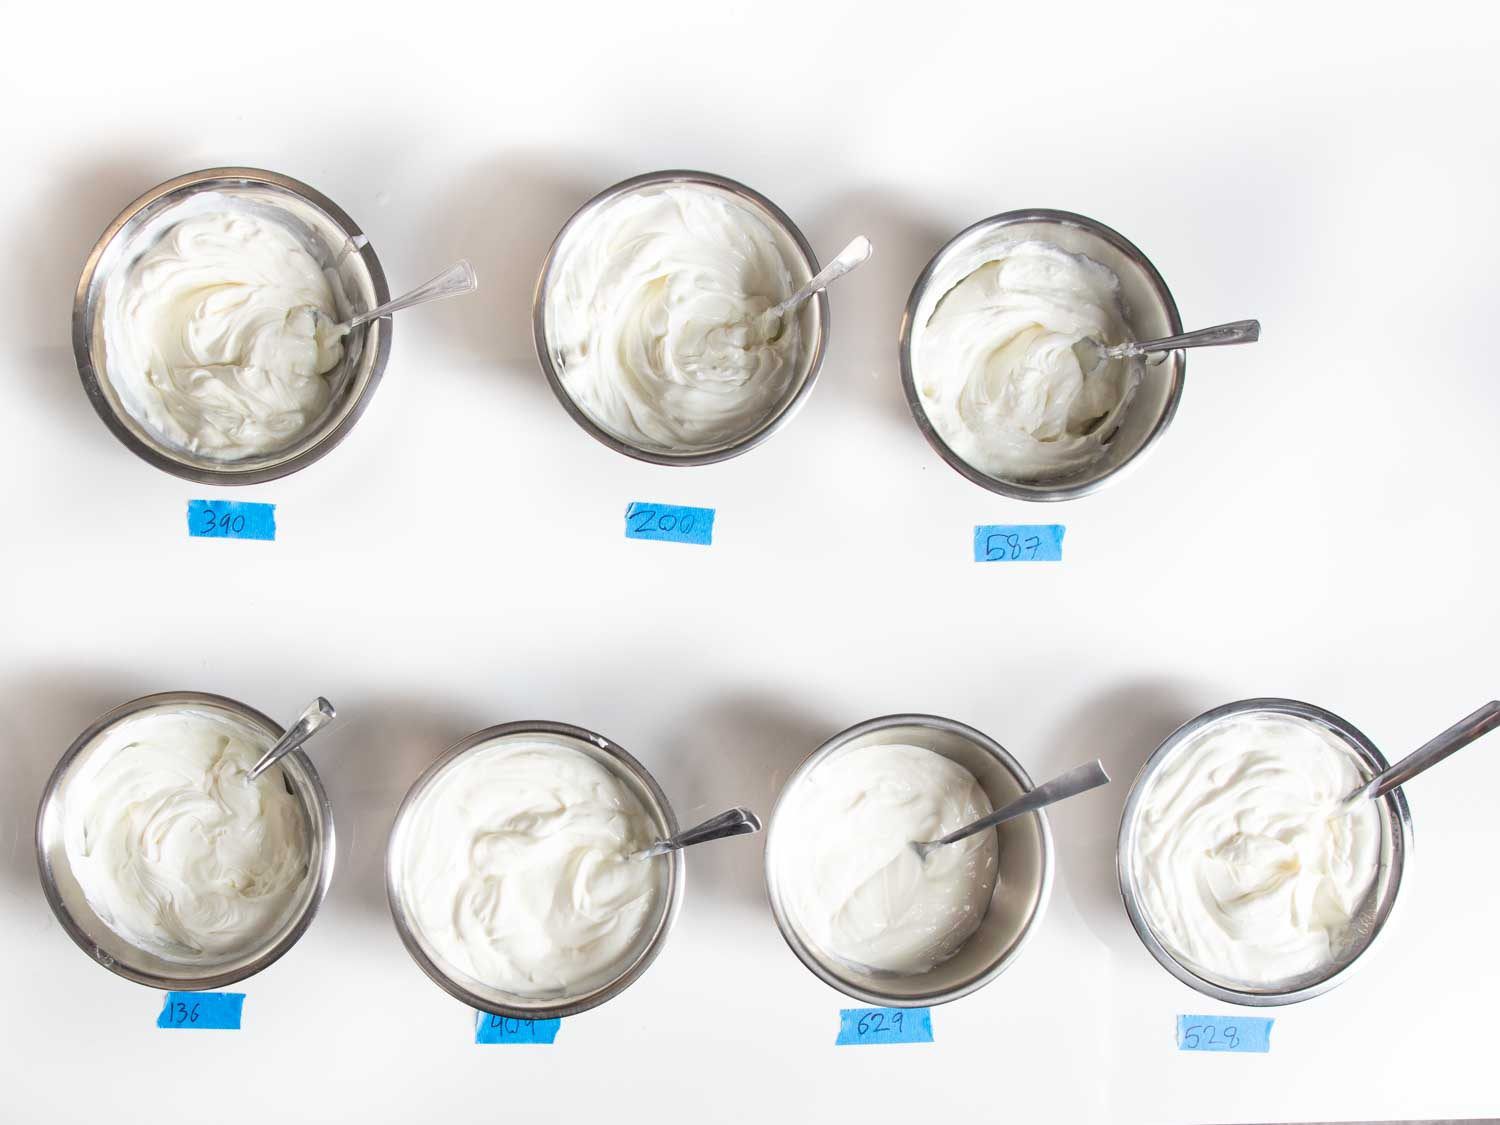 开销七菜的希腊酸奶的味道,每个用勺子困在里面,和一个蓝色标签放置在每一个编号